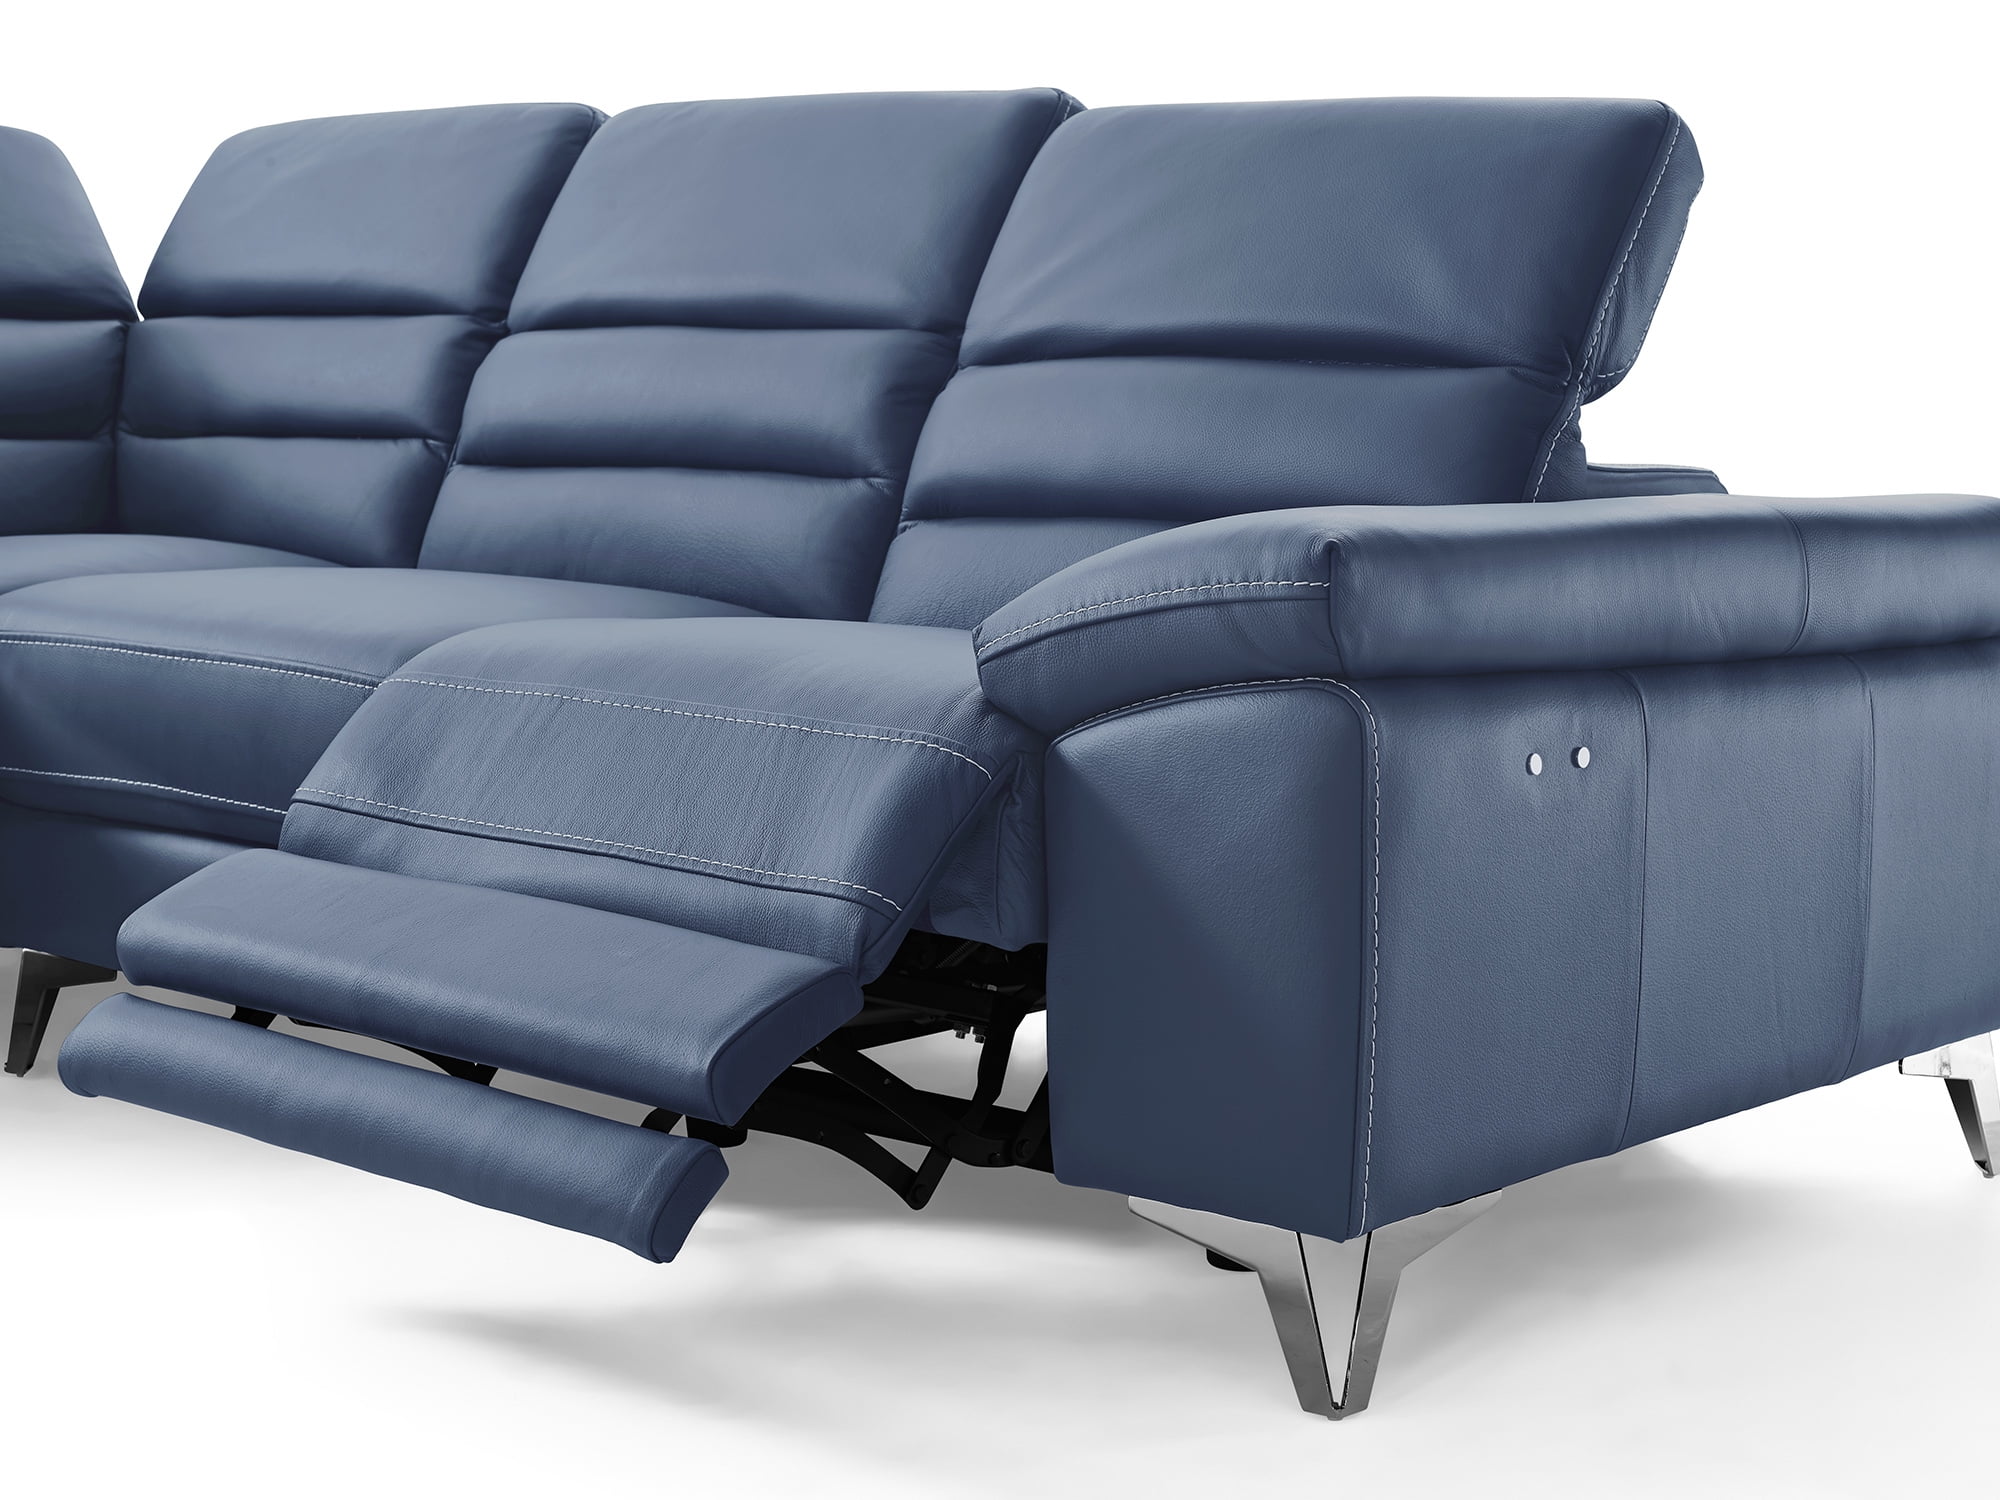 Whiteline Modern Living Navy Johnson, Navy Blue Genuine Leather Sectional Sofa